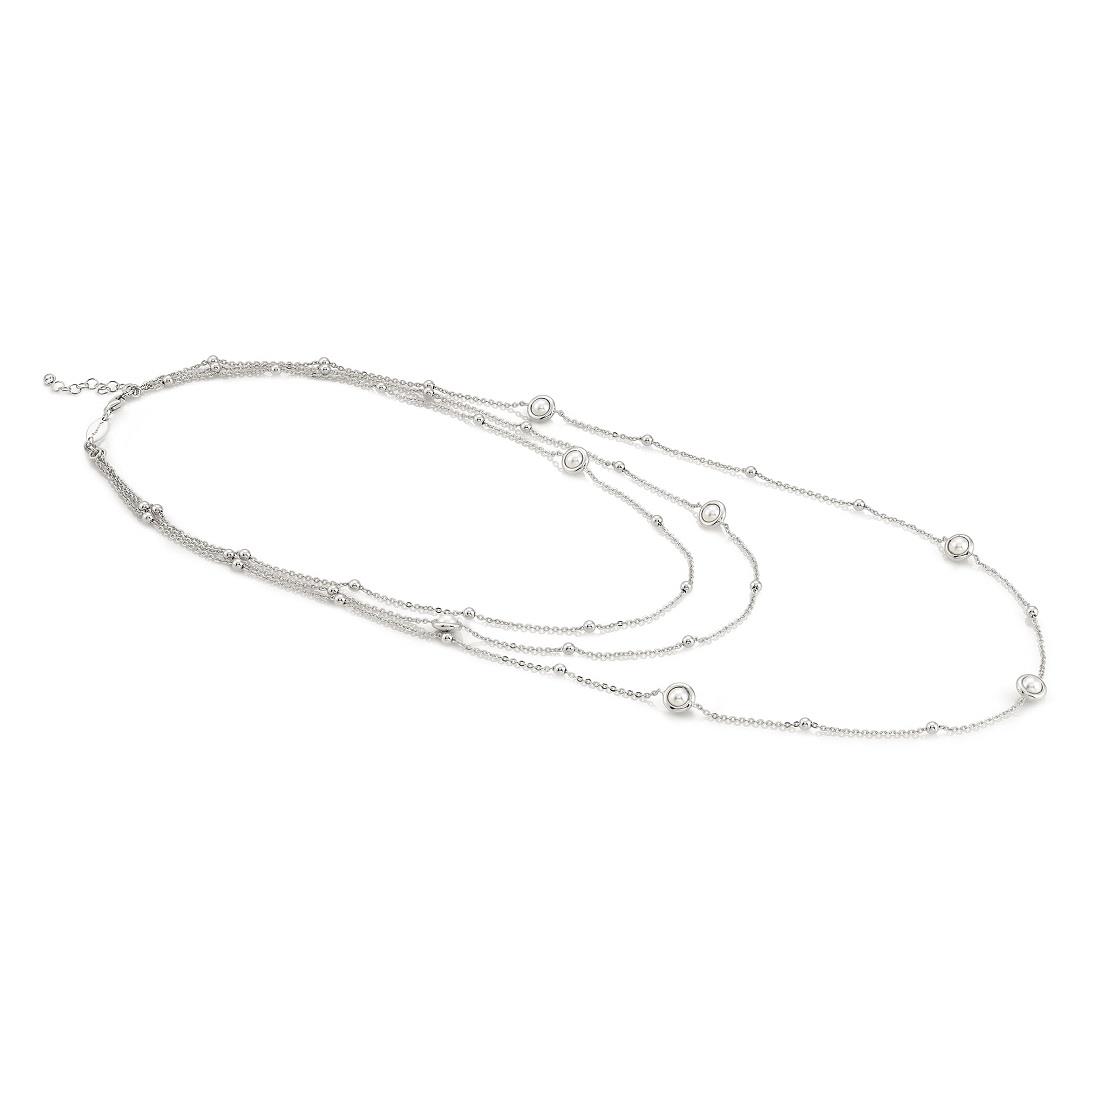 Collar largo en plata y perlas - NOMINATION